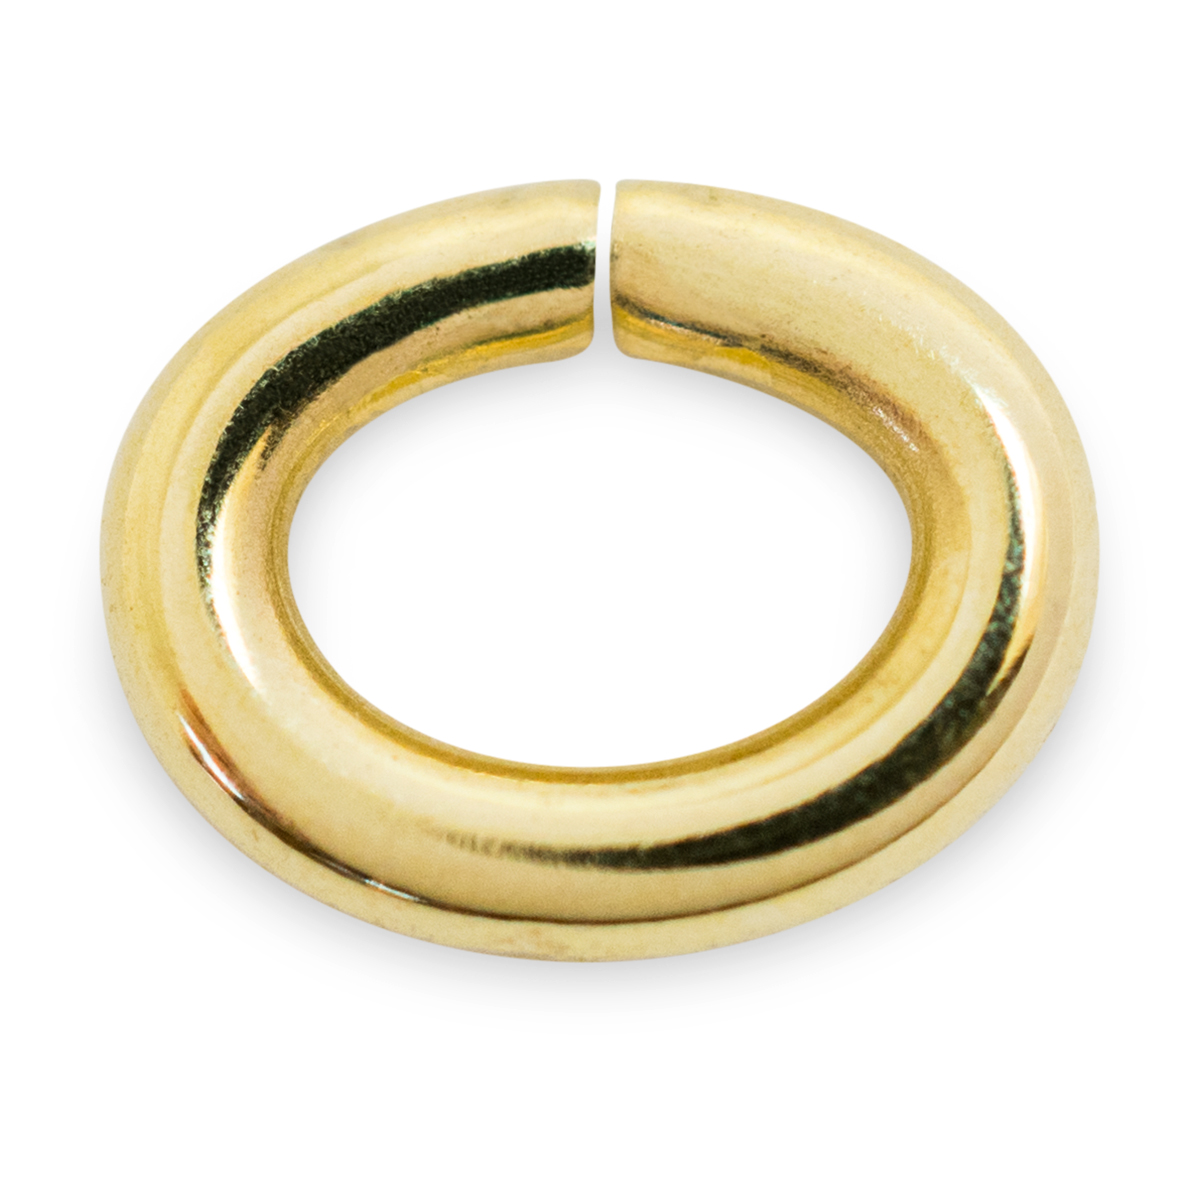 Binderinge, oval, 585/- Gelbgold, Ø 6 mm, Stärke 1 mm